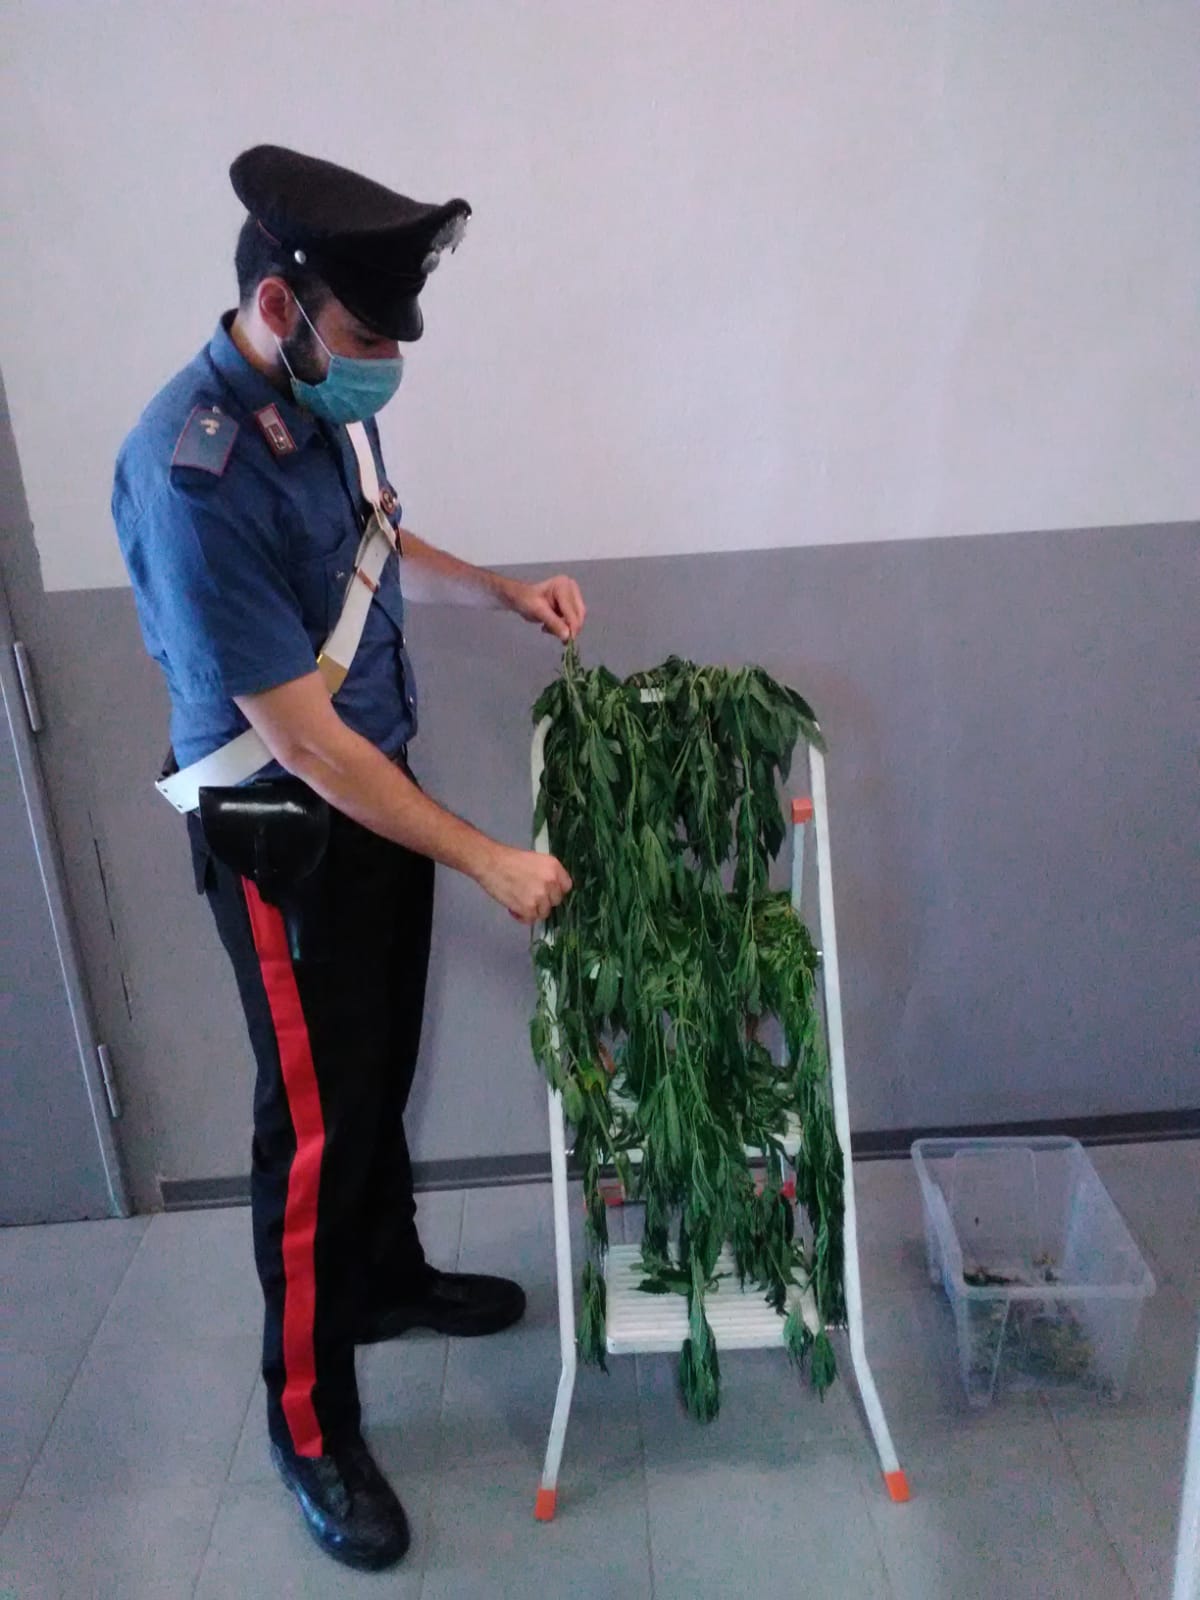 Voghera Carabinieri Di Voghera Arrestano Un Pensionato Coltivava Marijuana Nella Stanza Da Letto Voghera Sei Tu Notizie In Tempo Reale Da Voghera E Oltrepo